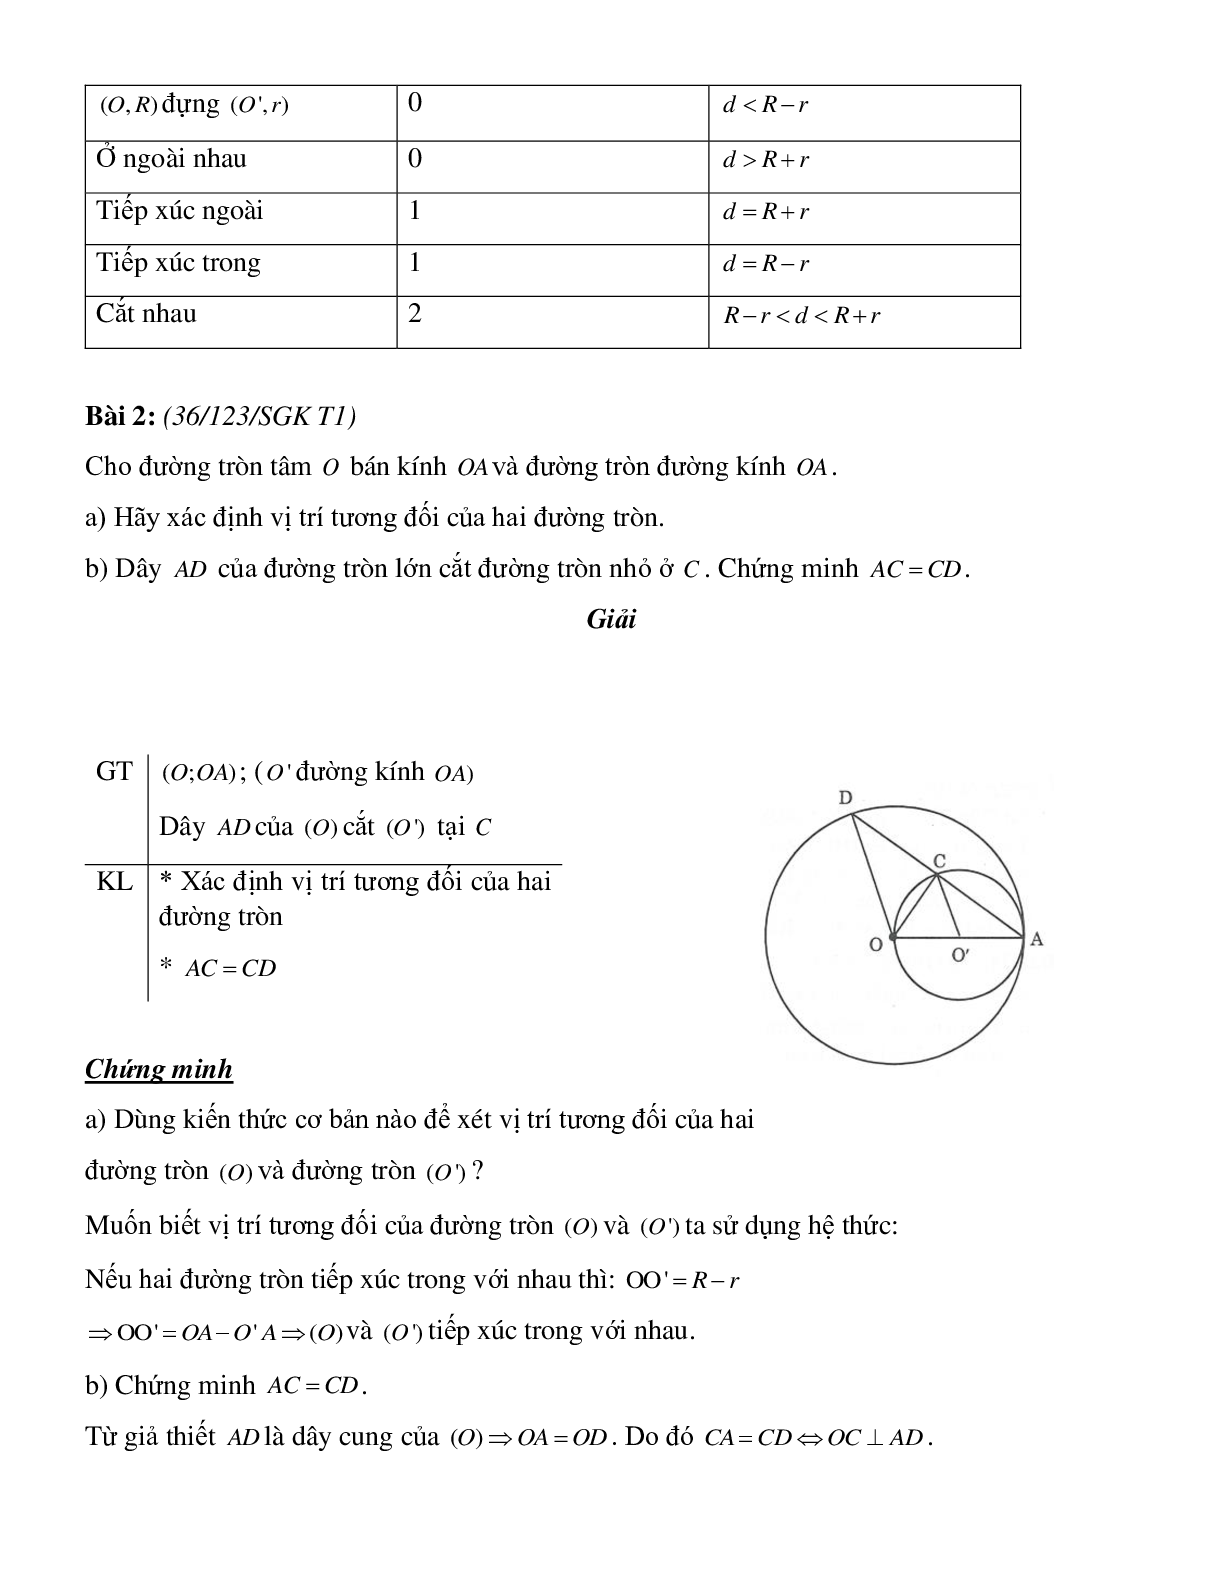 Bài tập về vị trí tương đối của hai đường tròn (tiếp theo) có đáp án (trang 3)